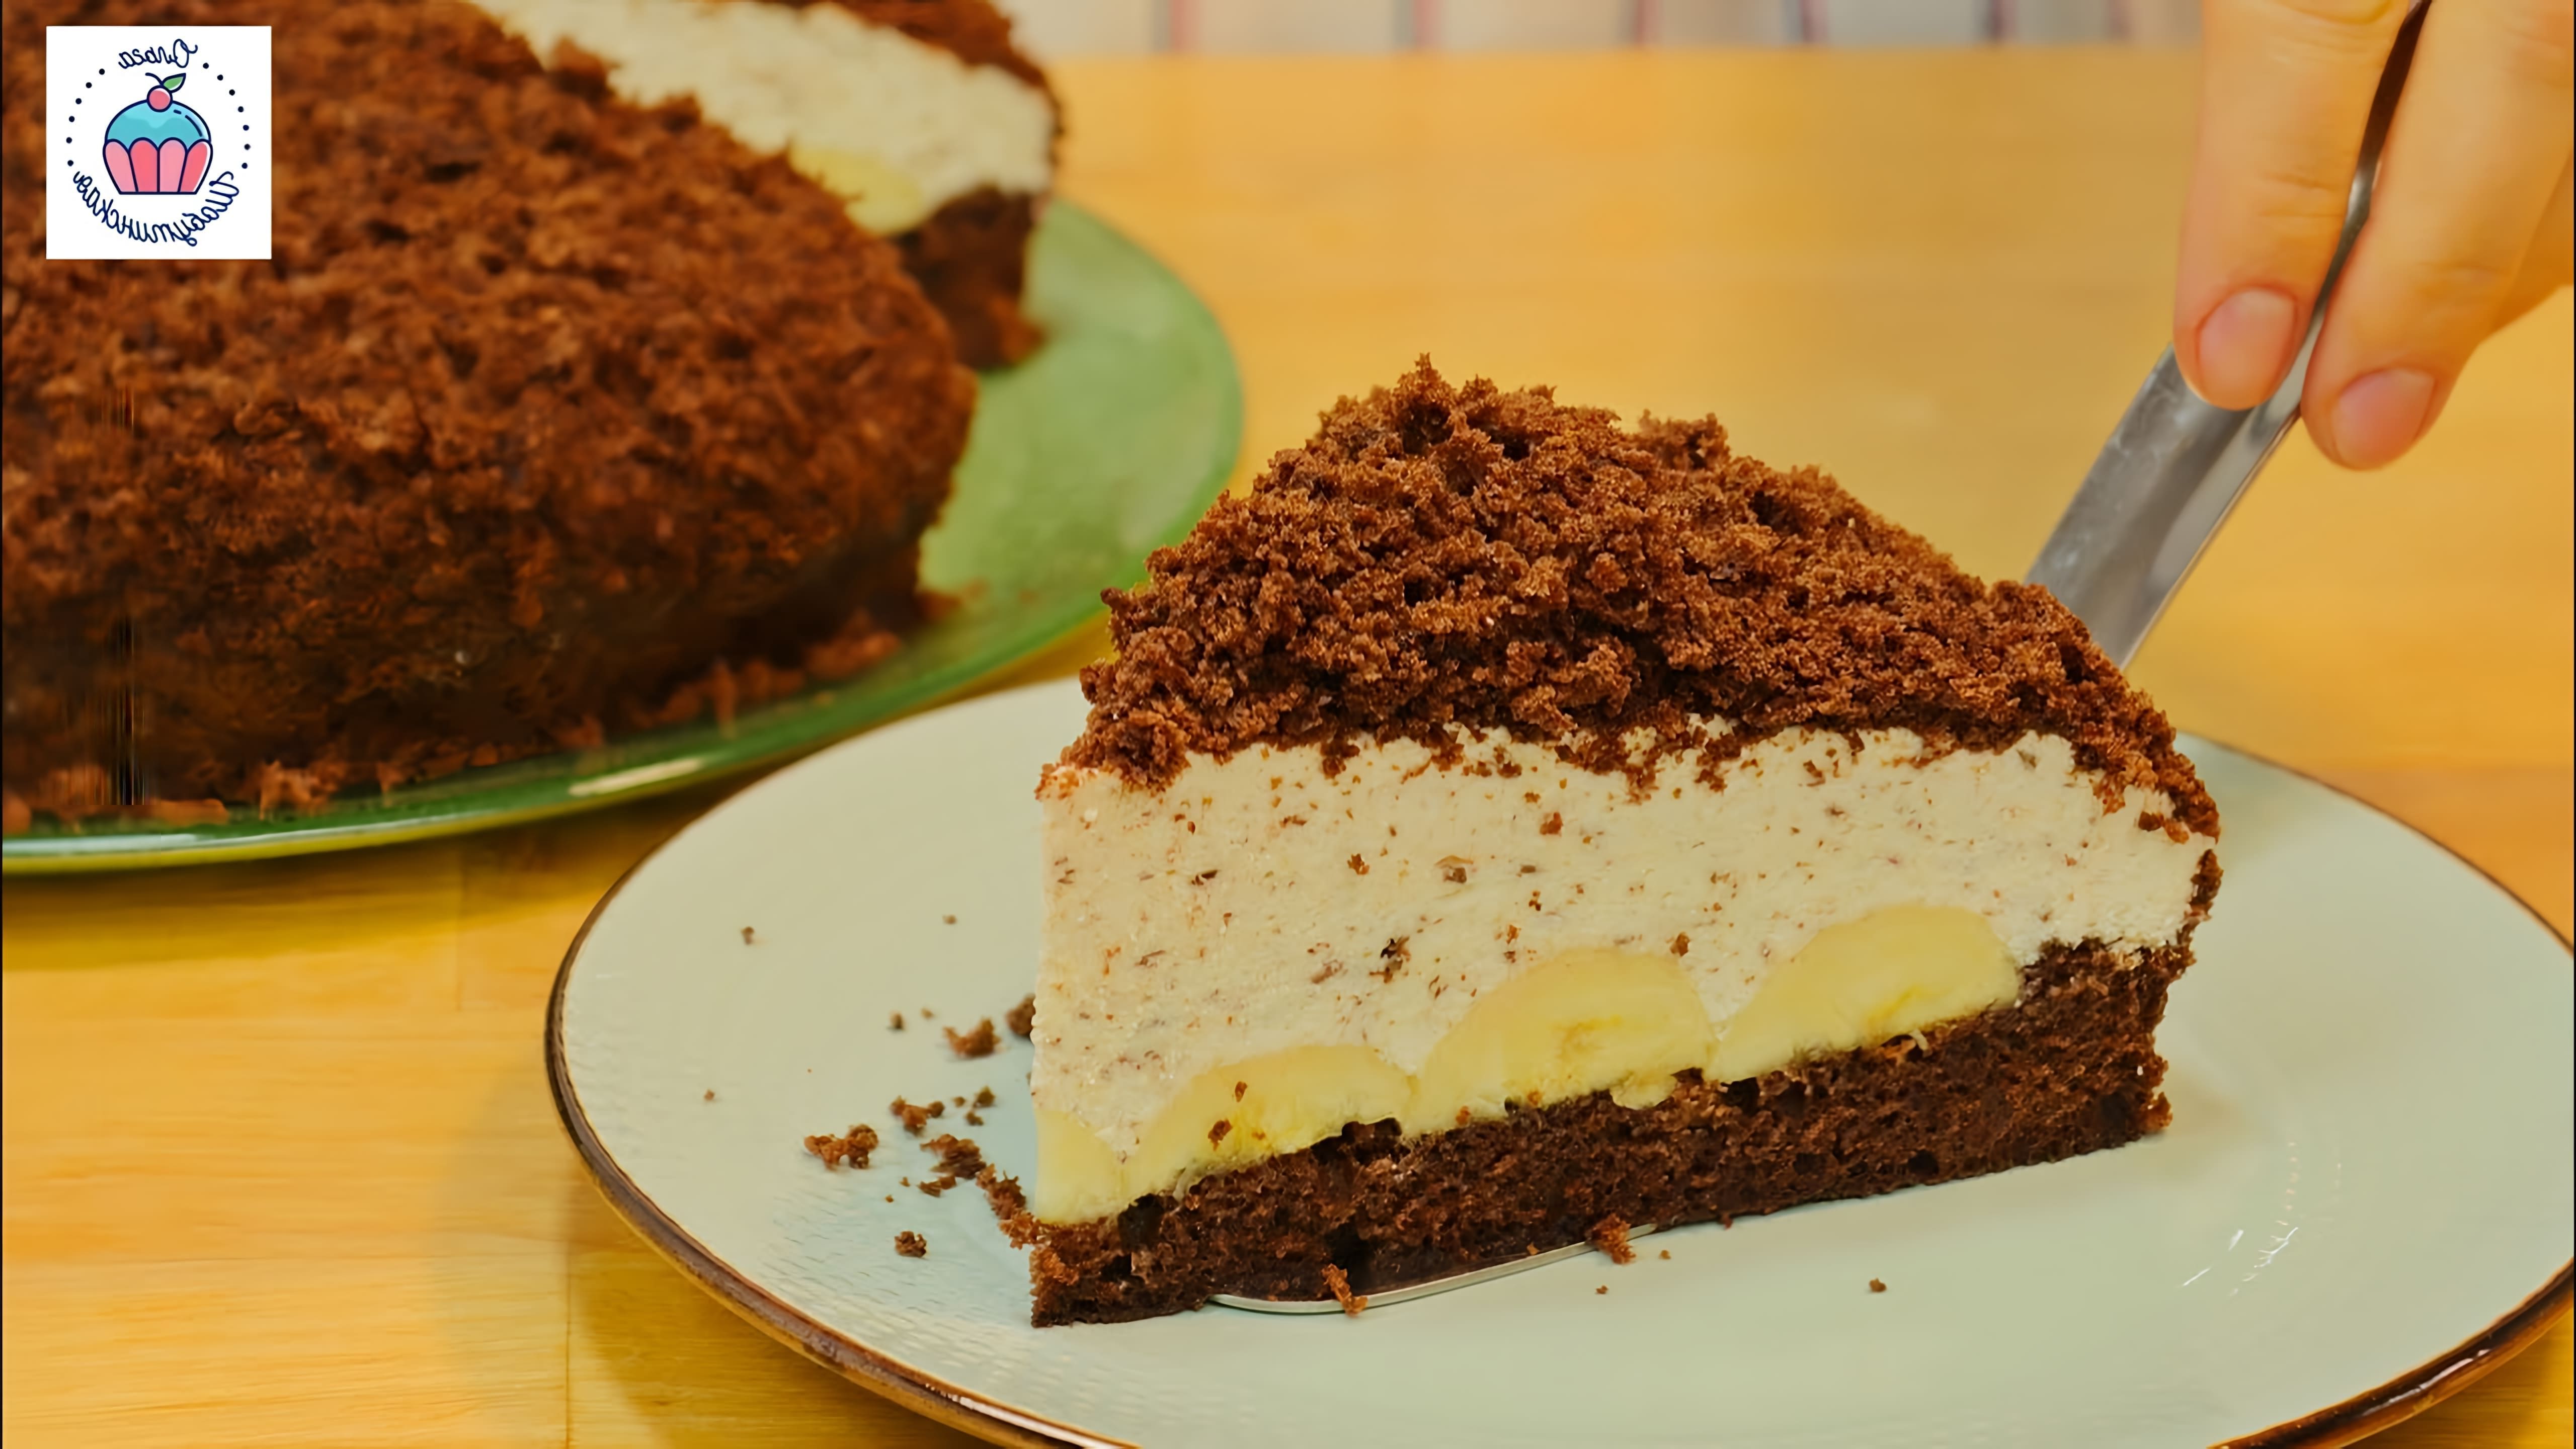 В этом видео-ролике мы увидим процесс приготовления знаменитого торта "НОРКА КРОТА", который славится своей нежностью и вкусом